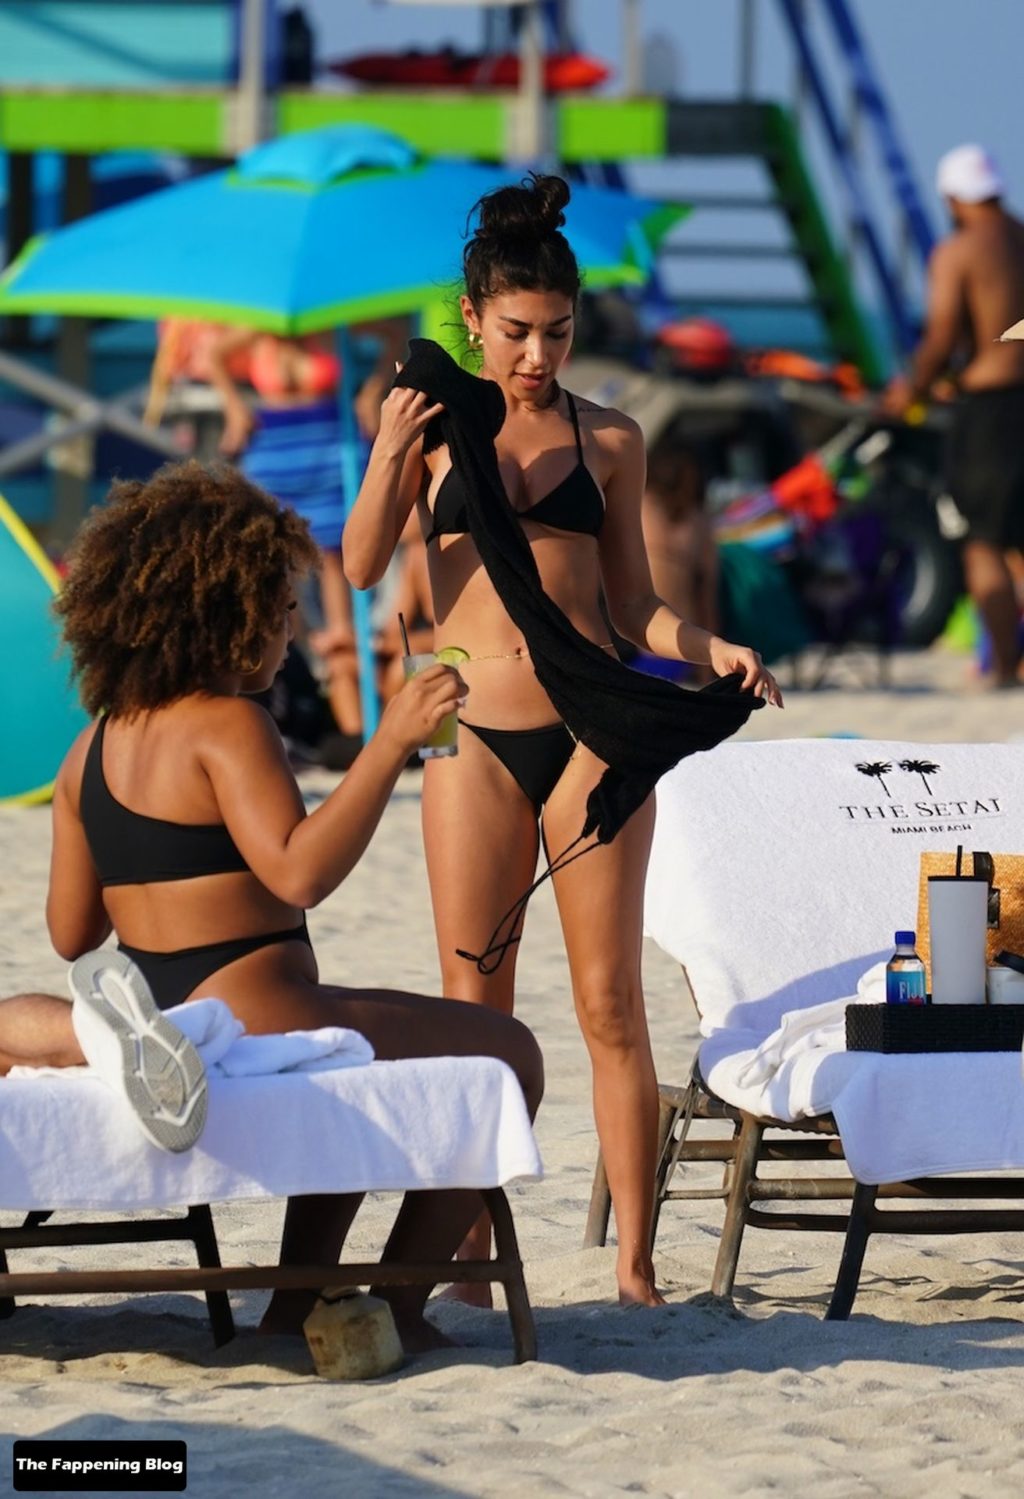 Bikini leopard a on sunbathing beach jeffries chantel in leaked